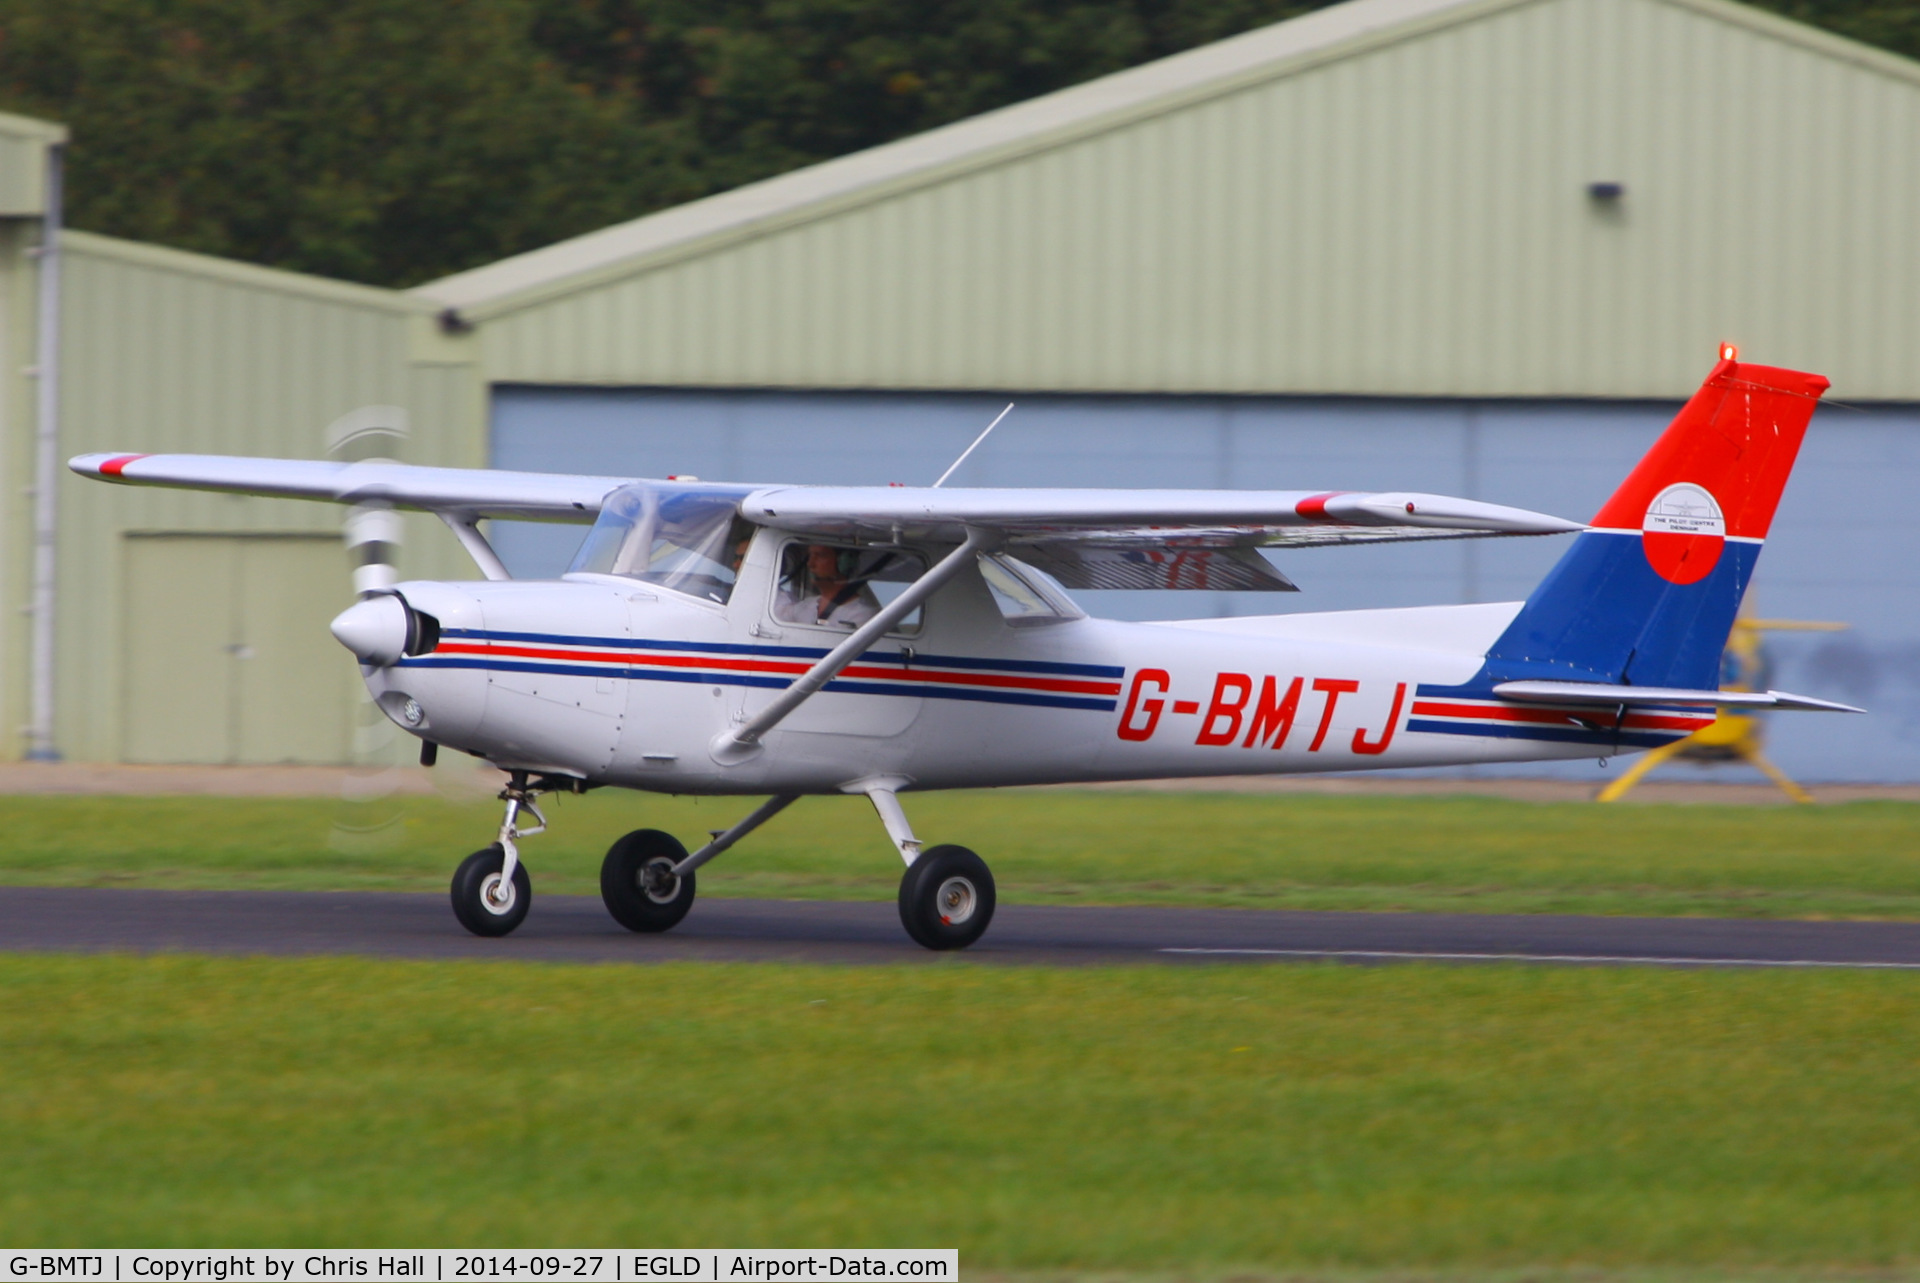 G-BMTJ, 1981 Cessna 152 C/N 152-85010, Bickertons Aerodromes Ltd